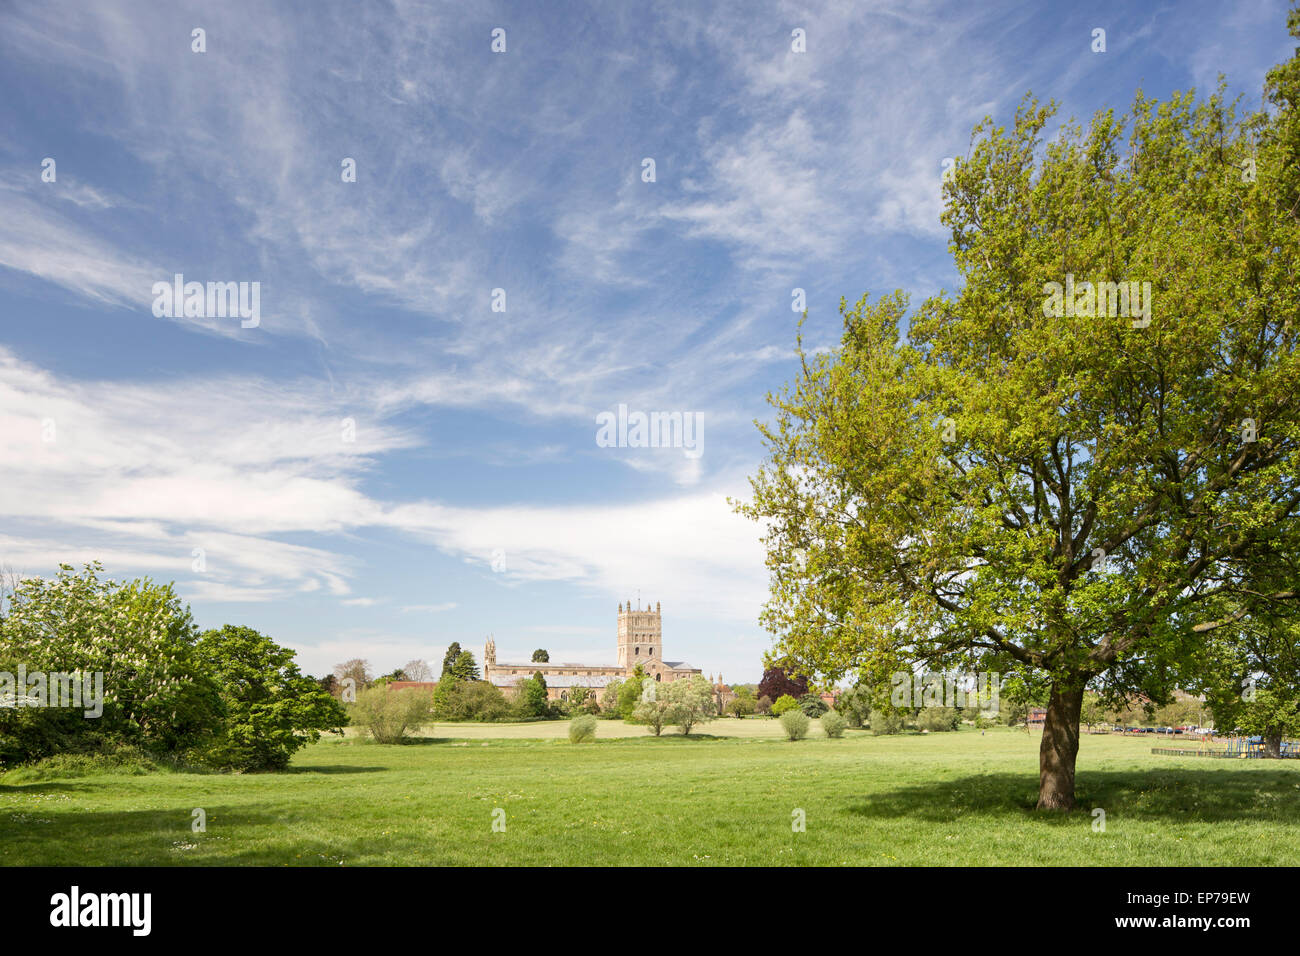 Tewkesbury Abbey, Gloucestershire, England, UK Stock Photo